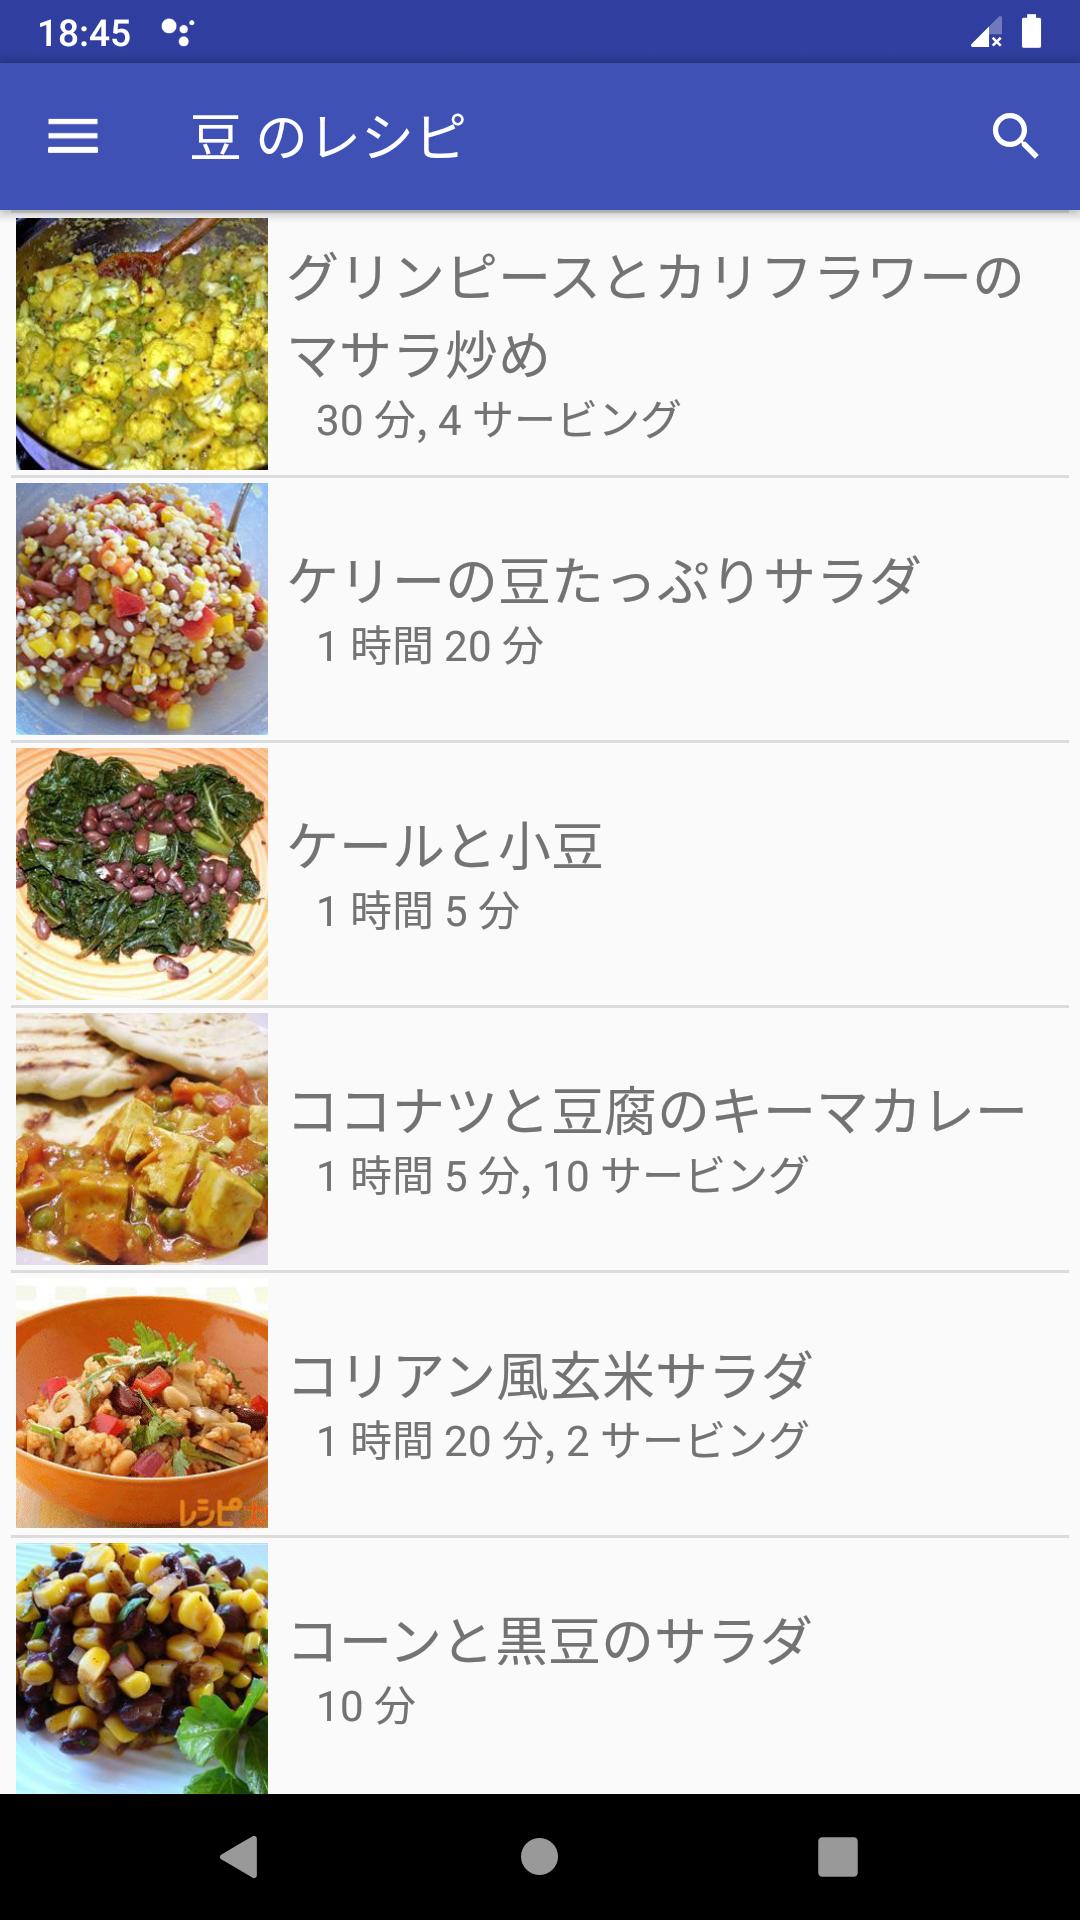 豆 のレシピアプリオフライン 日本料理レシピ For Android Apk Download